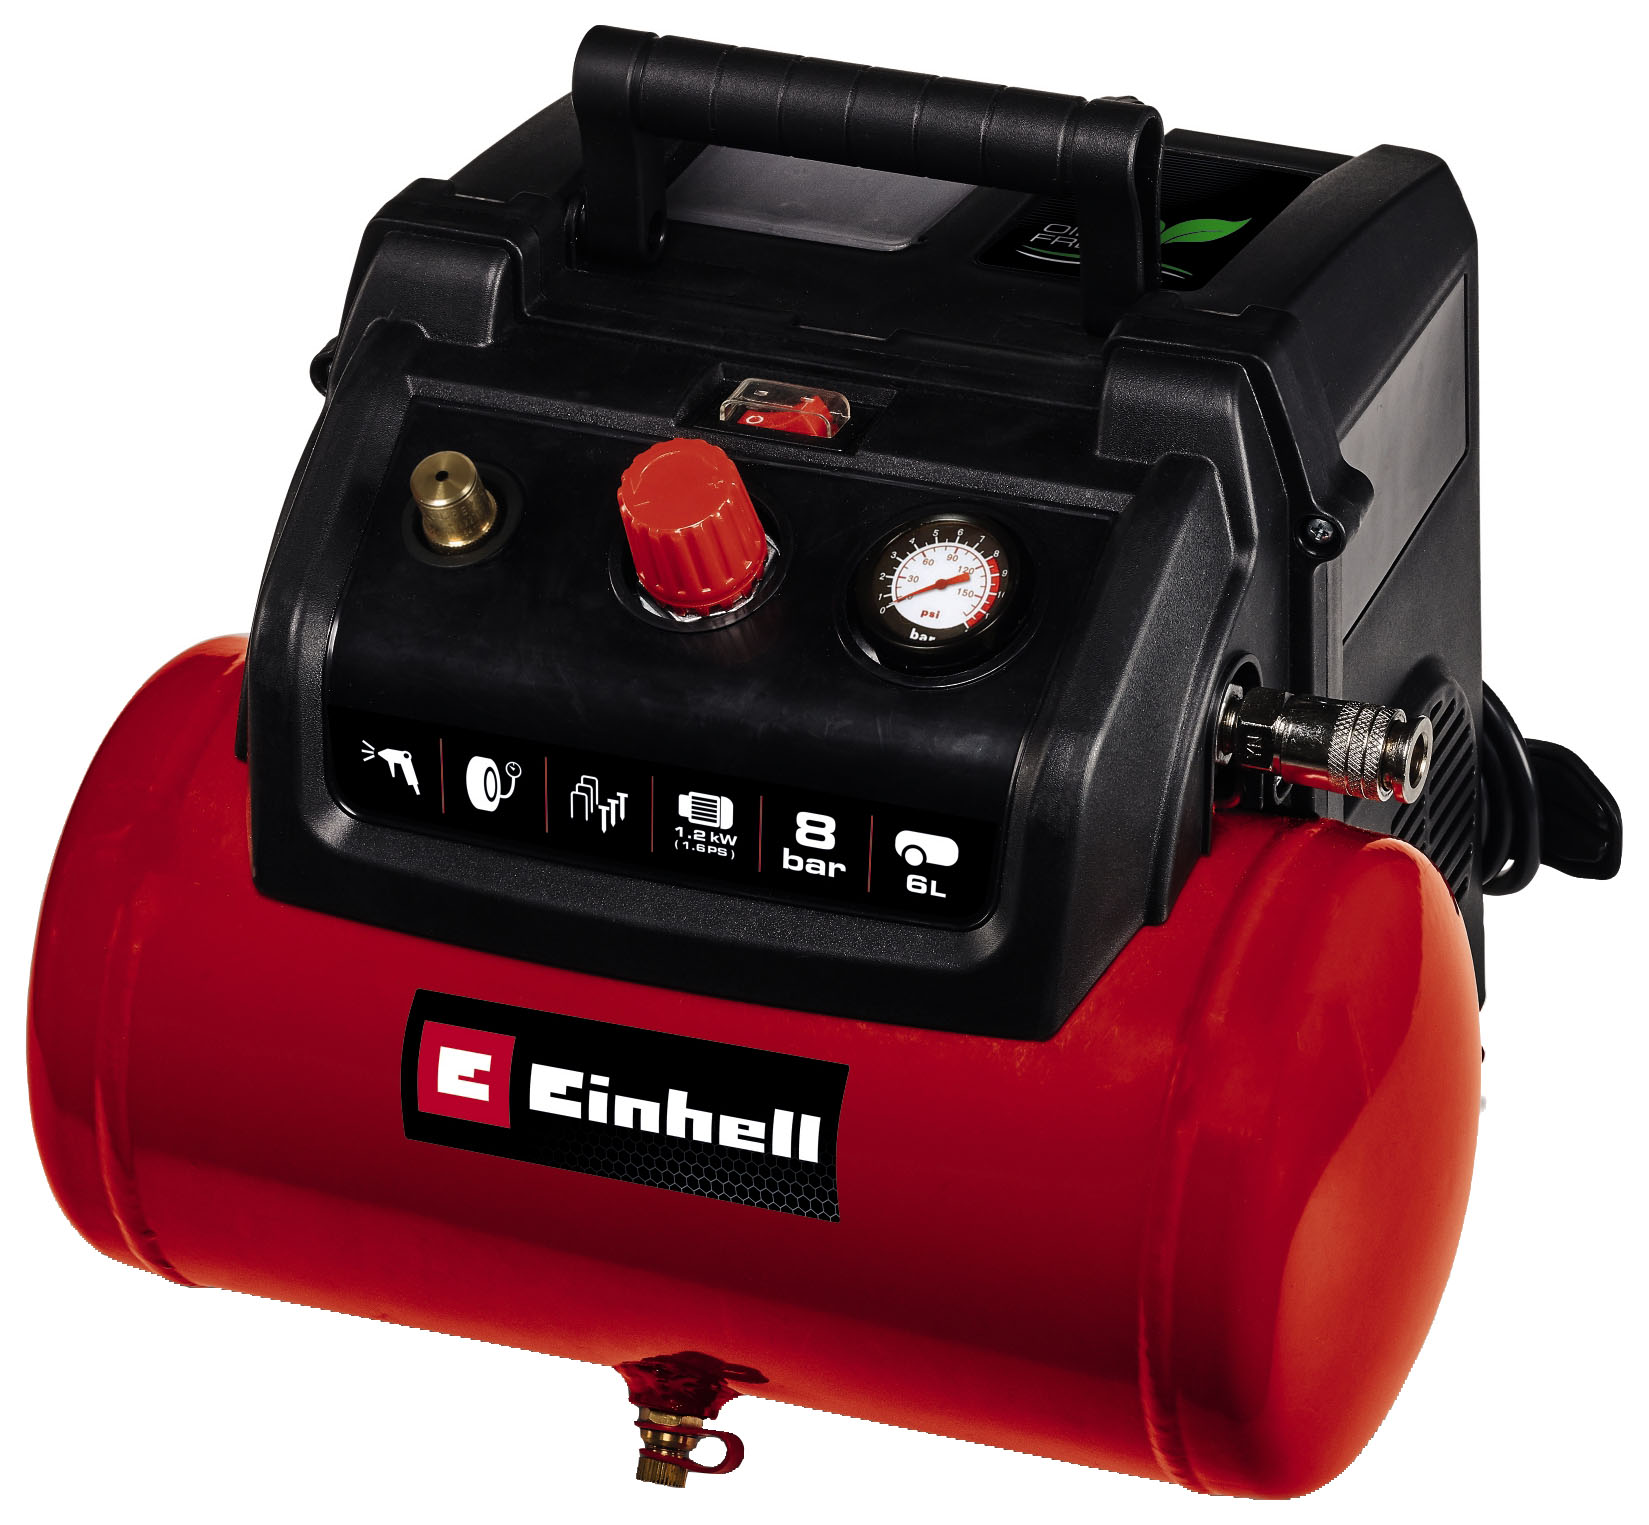 Einhell 1.6HP 6L 8 Bar Corded Oil Free Air Compressor